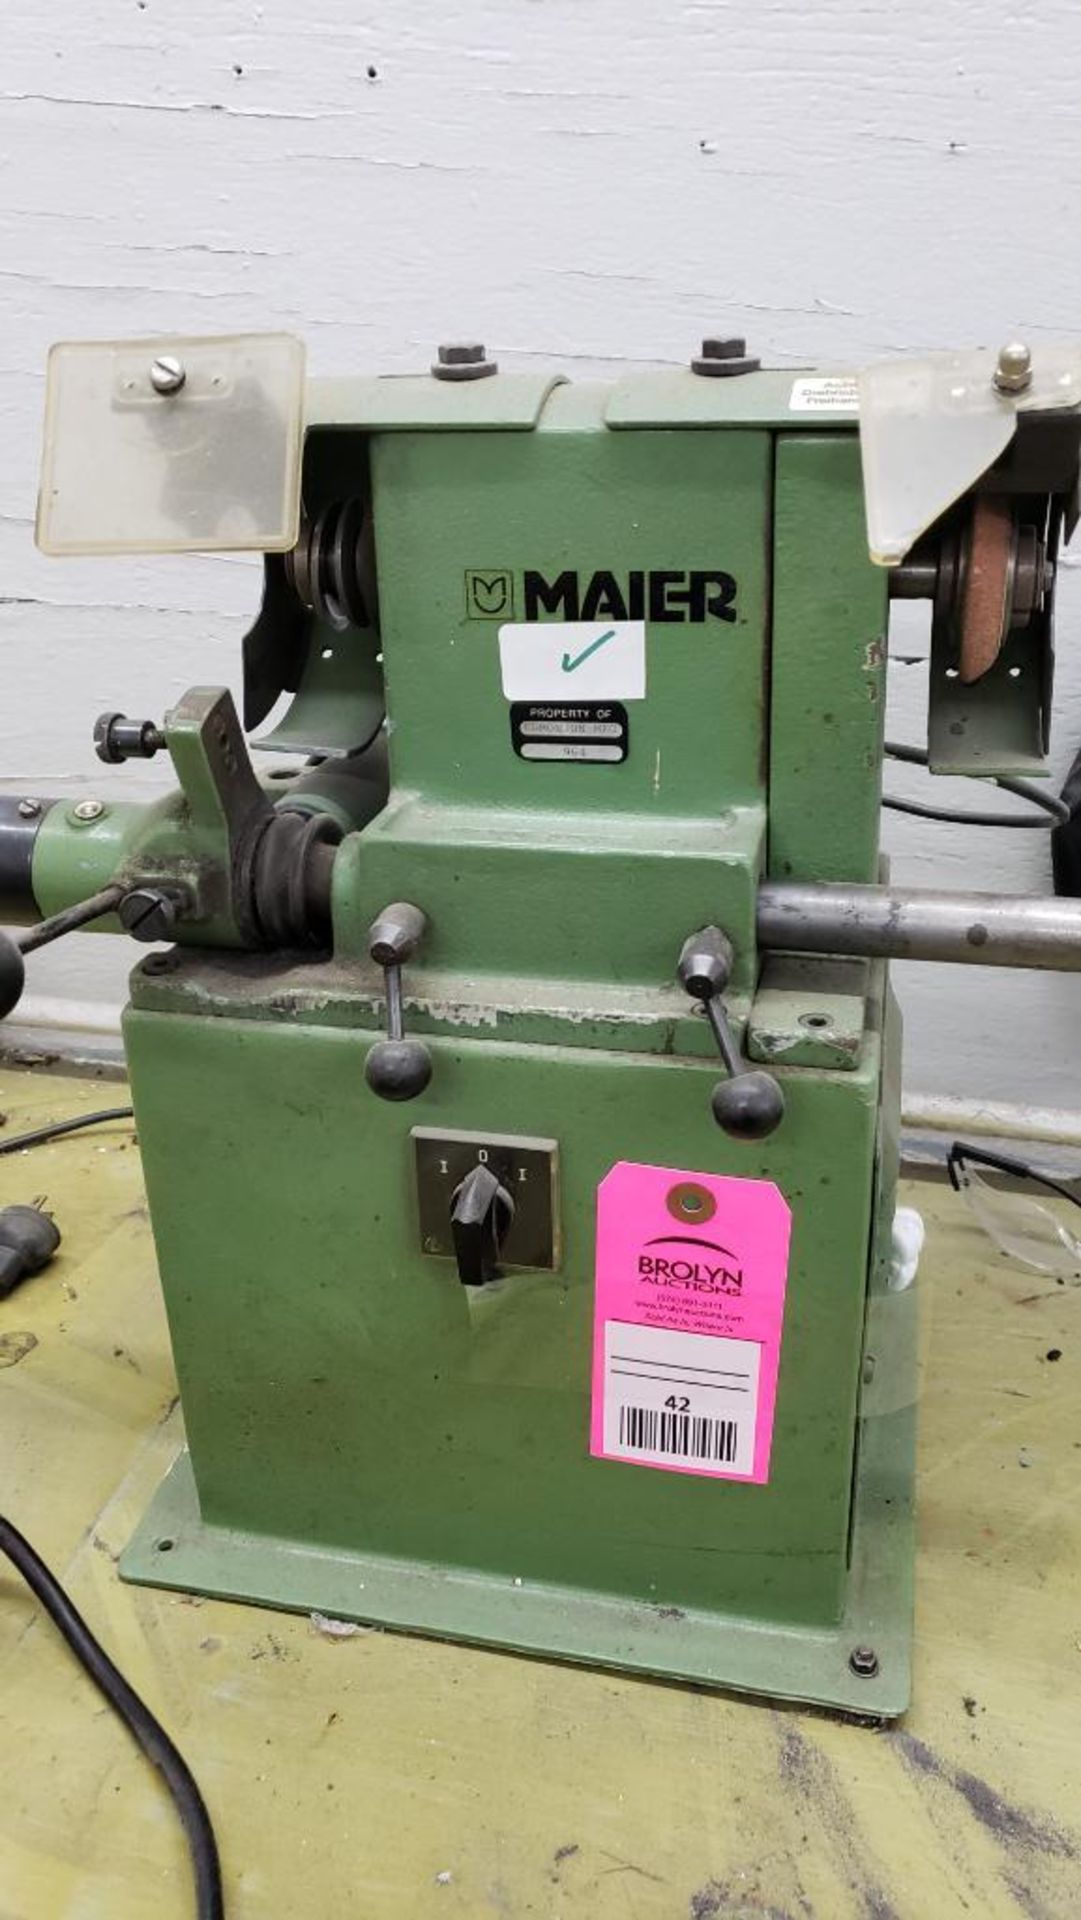 Maier scissor sharpener / grinder. 110v single phase.